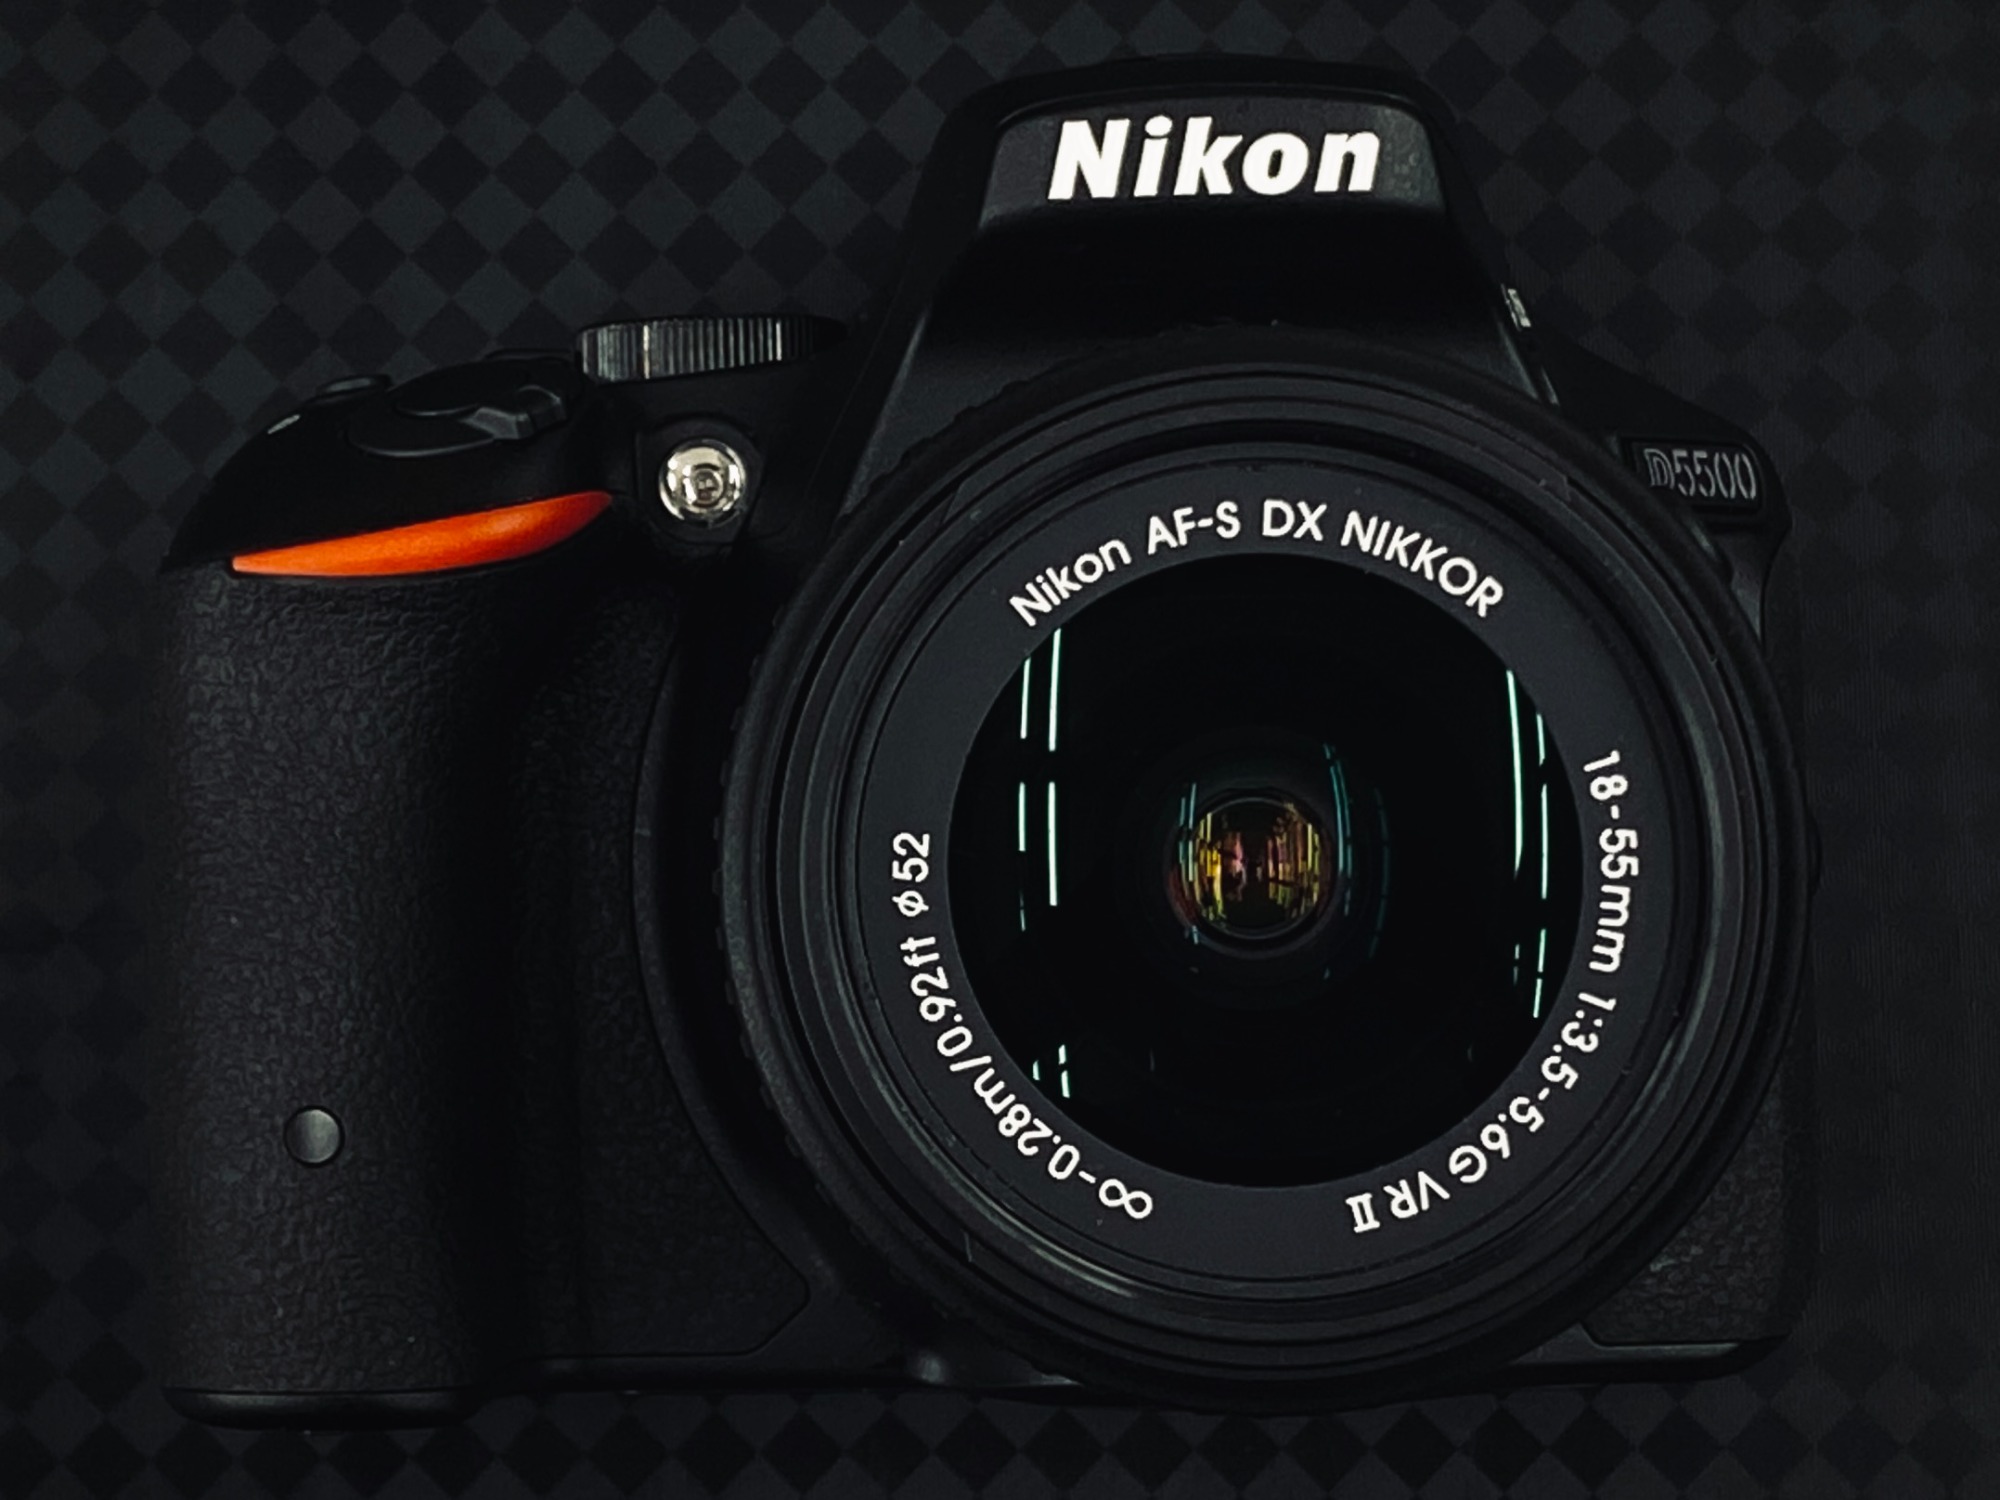 Nikon (ニコン) D5500 18-55 VR Ⅱ レンズキット 買取入荷しました ...